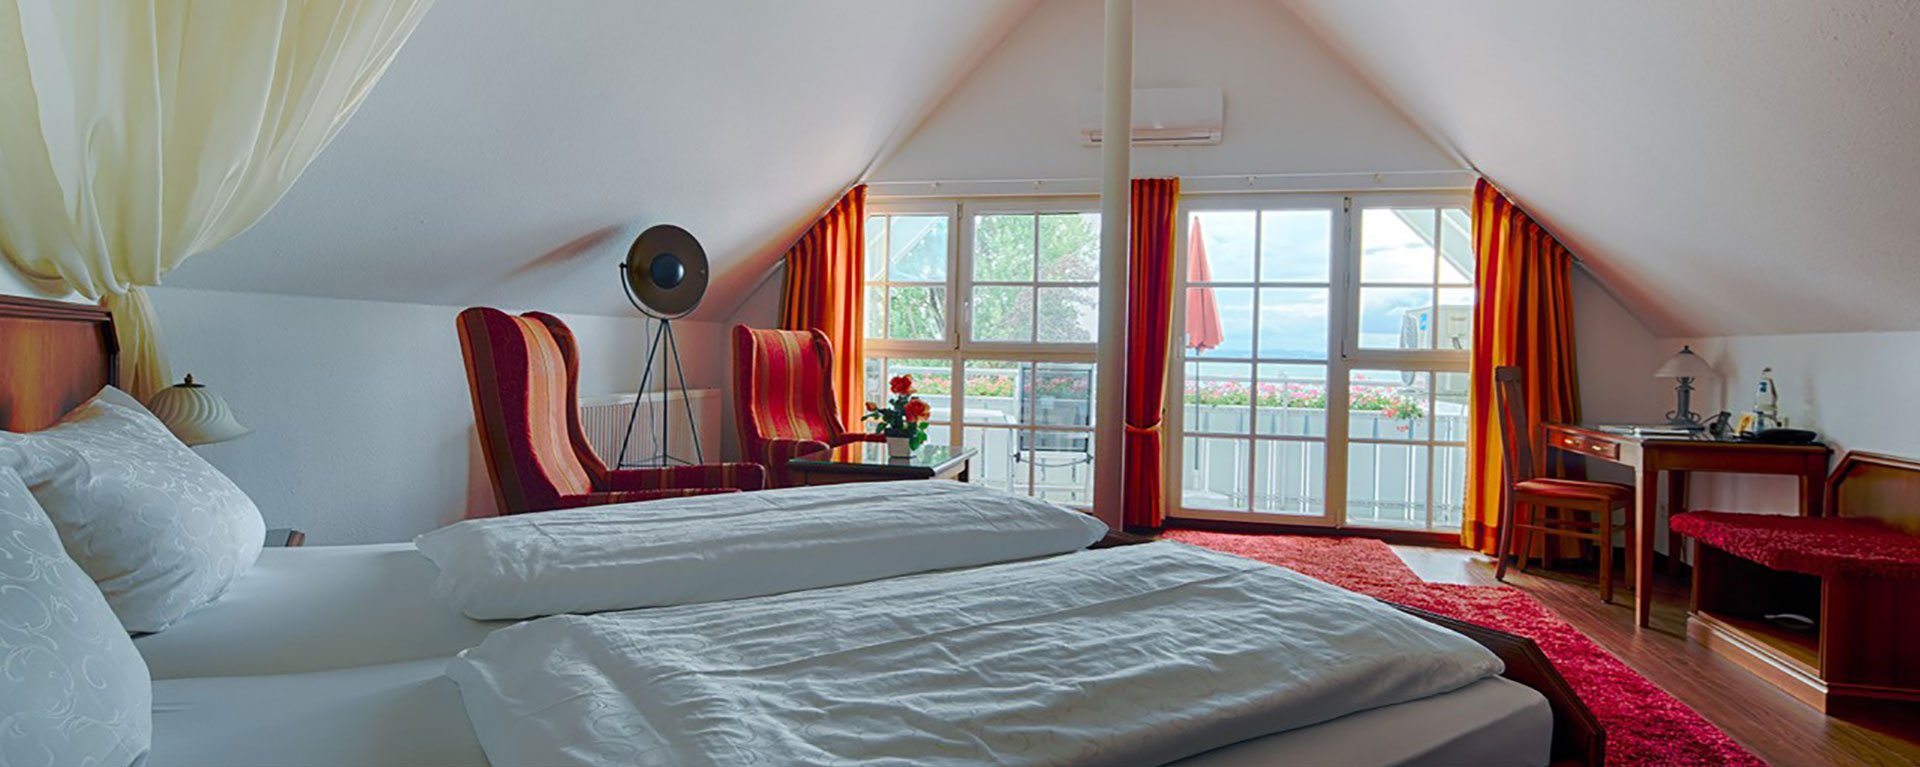 Junior-Suite zur Seeseite des Hotels Seeperle am Bodensee.